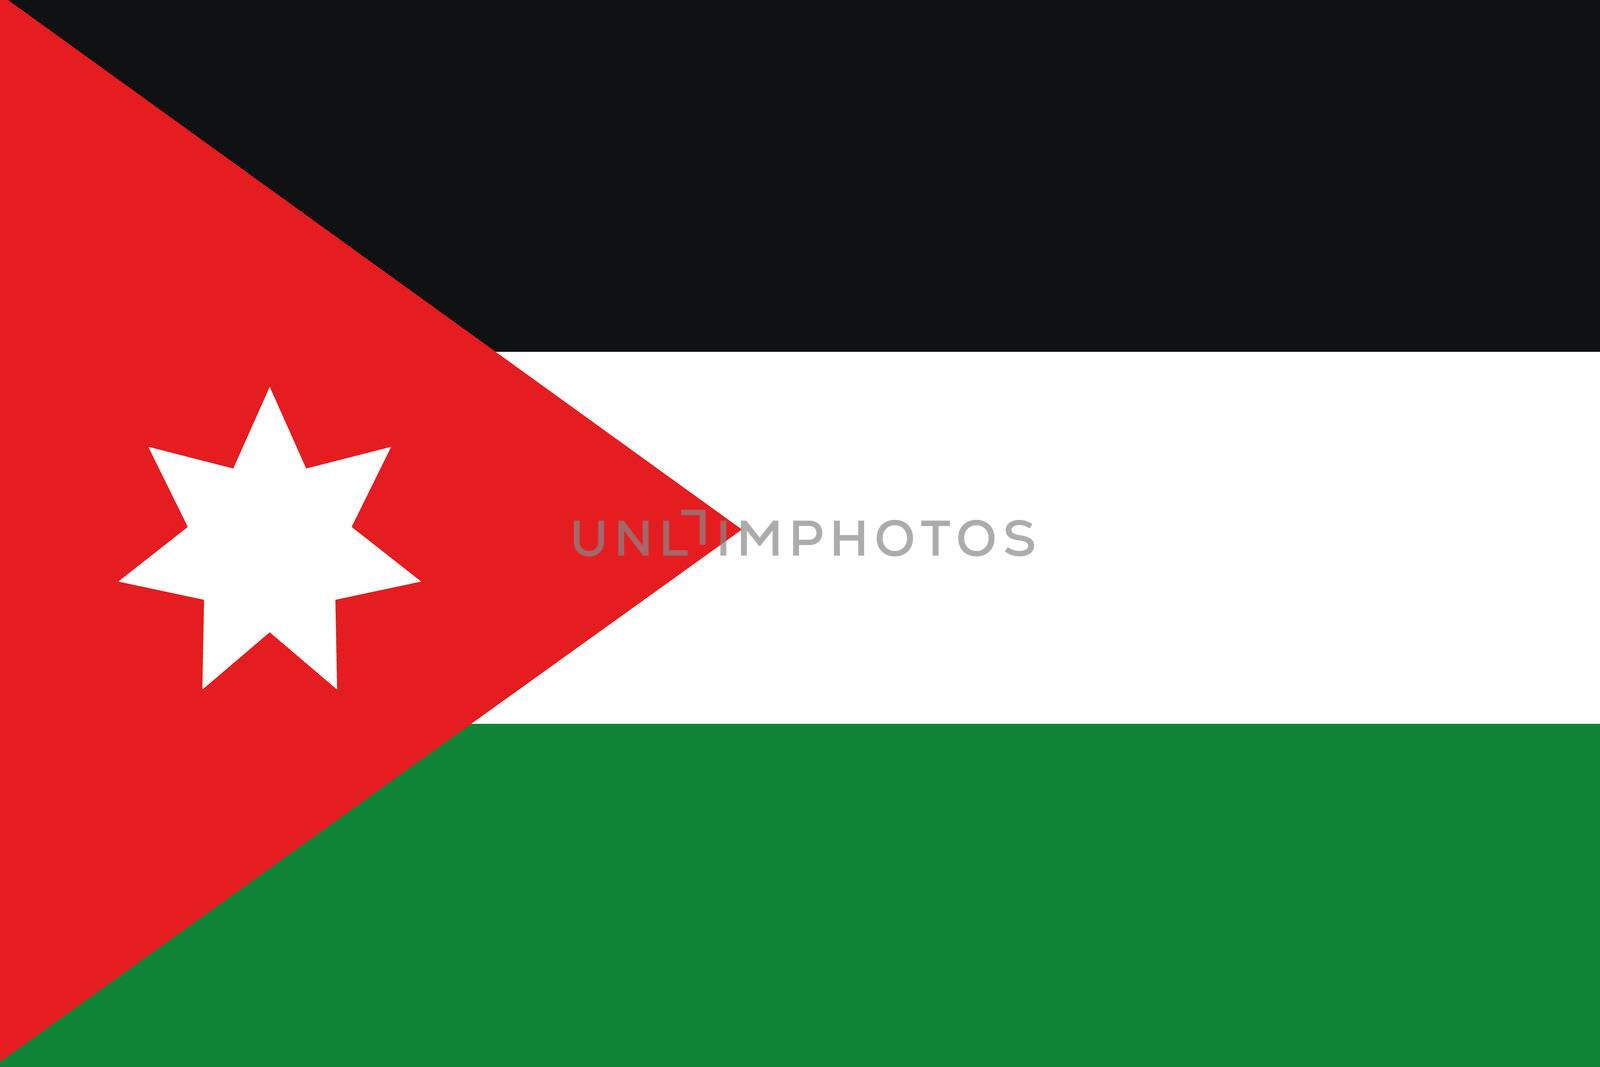 An illustration of the flag of Jordan